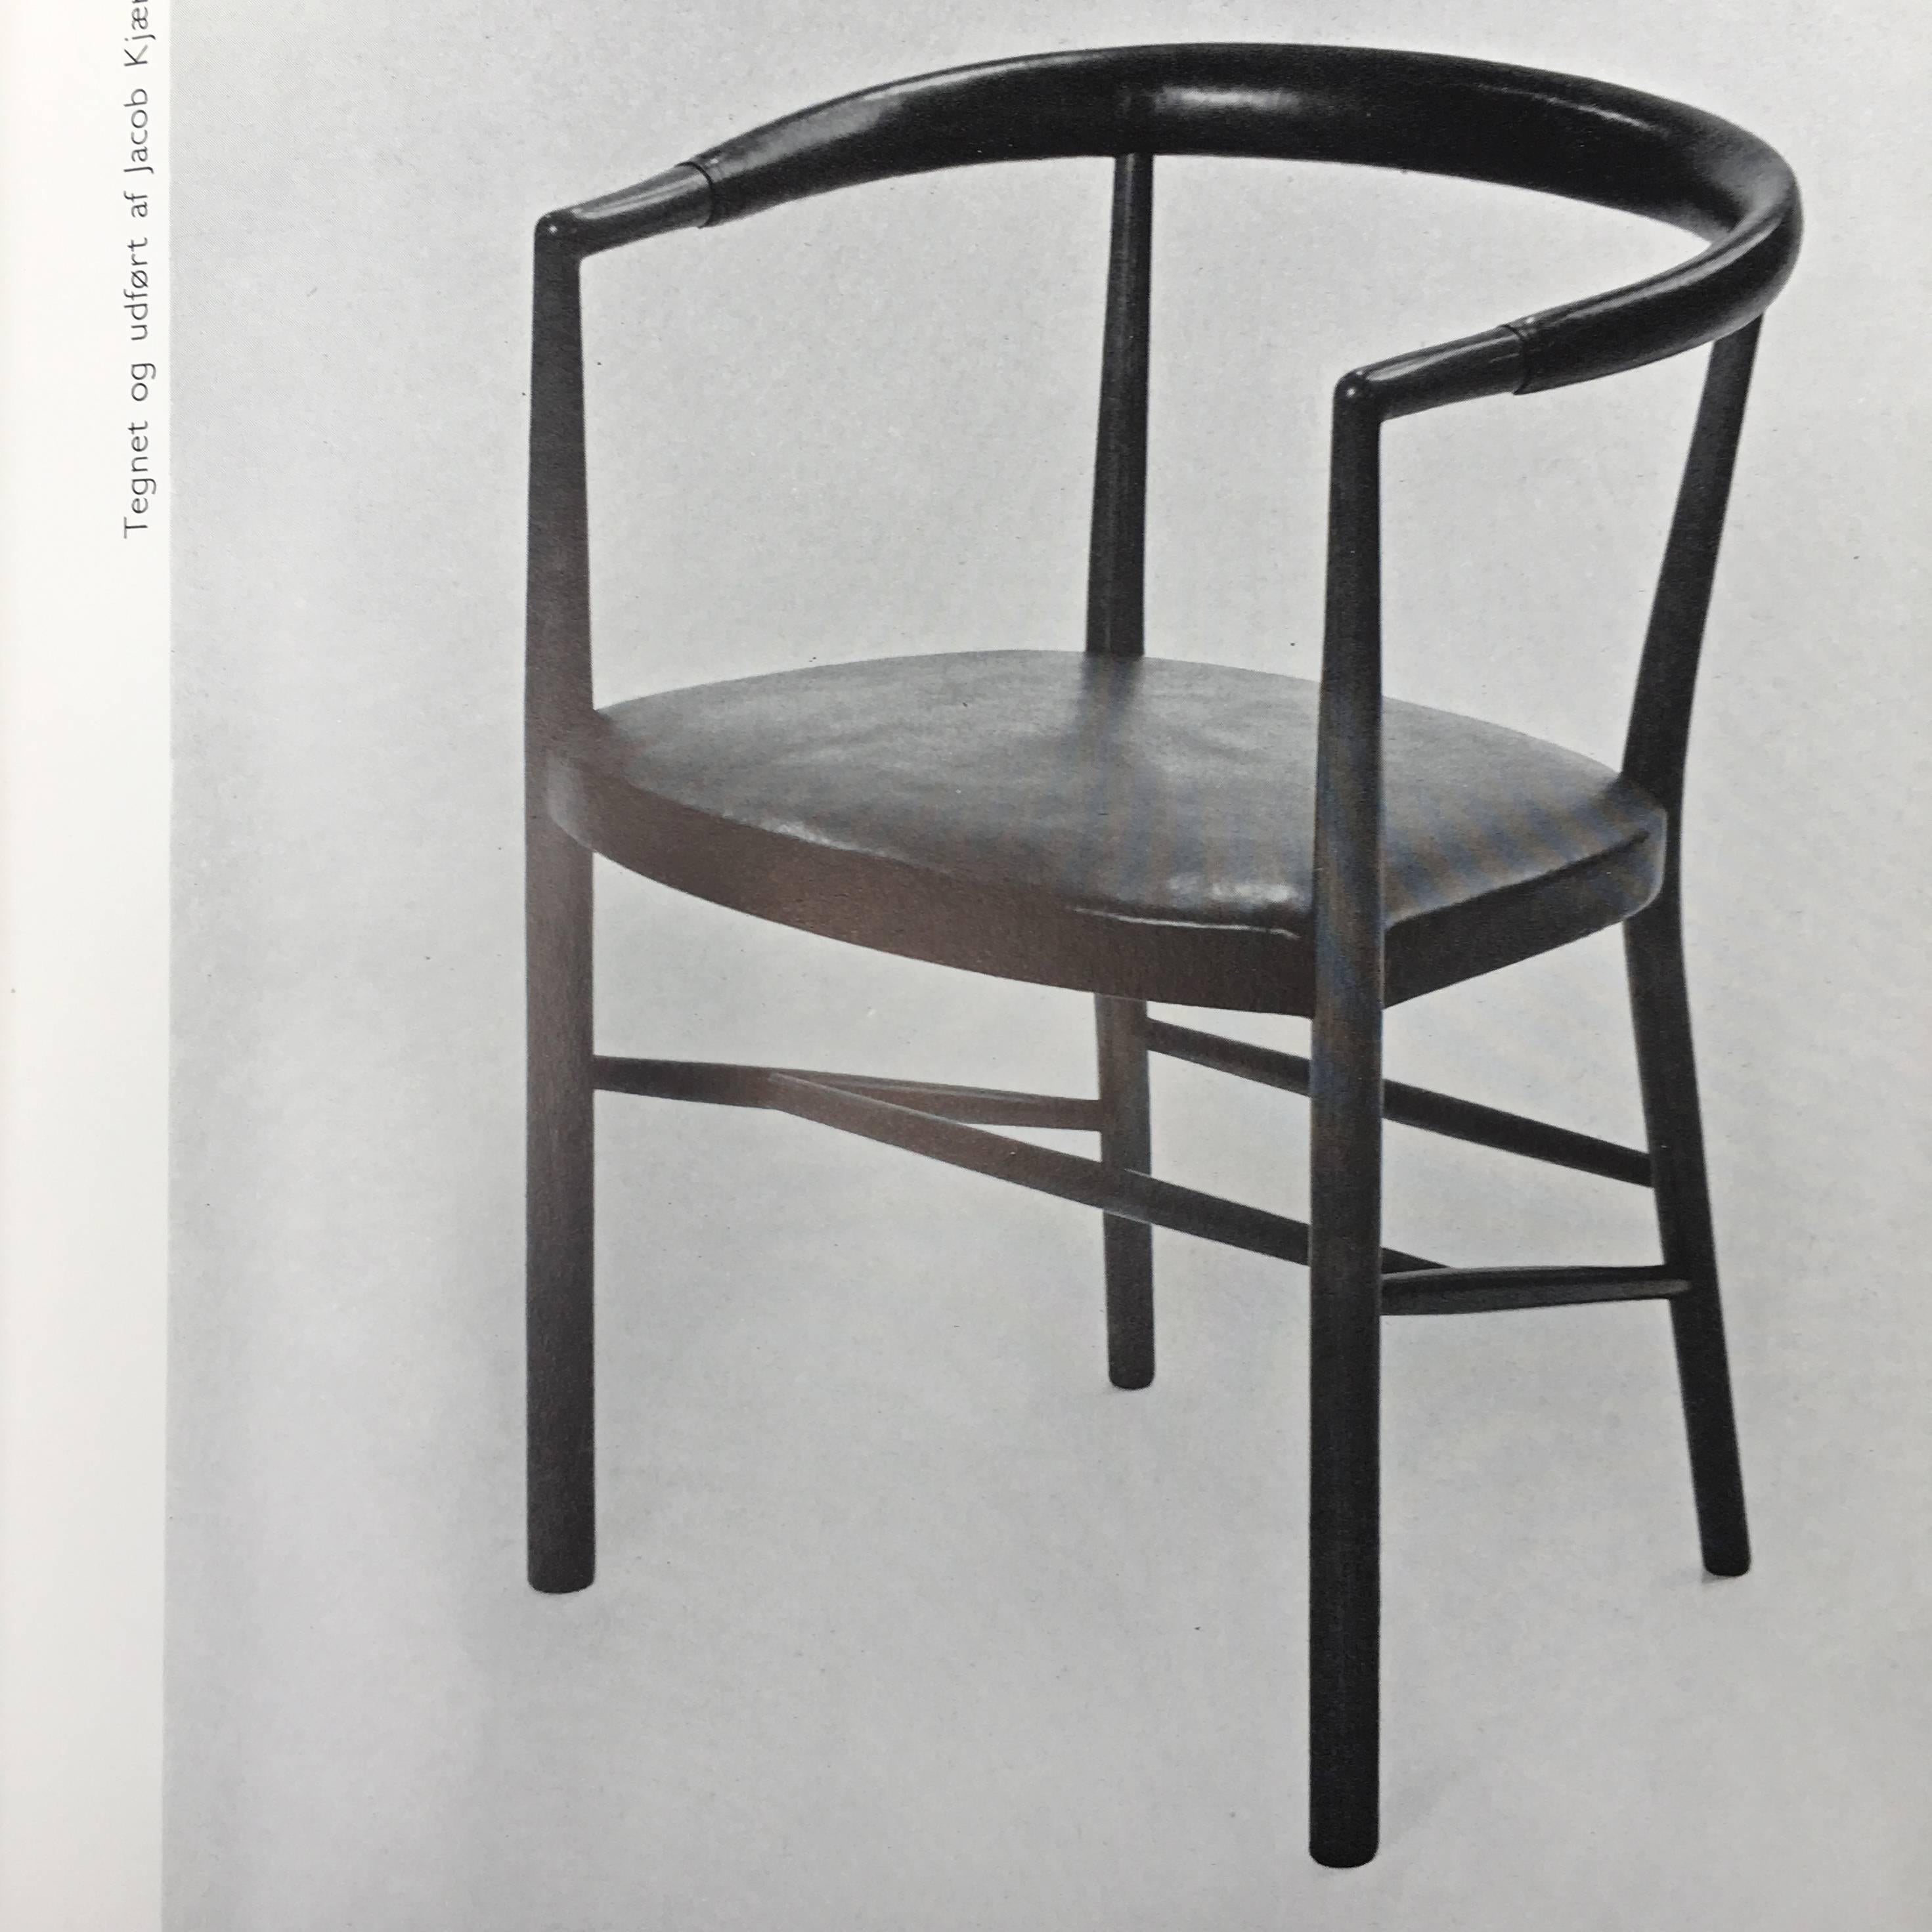 Paper Danske Stole Danish Chairs, 1954